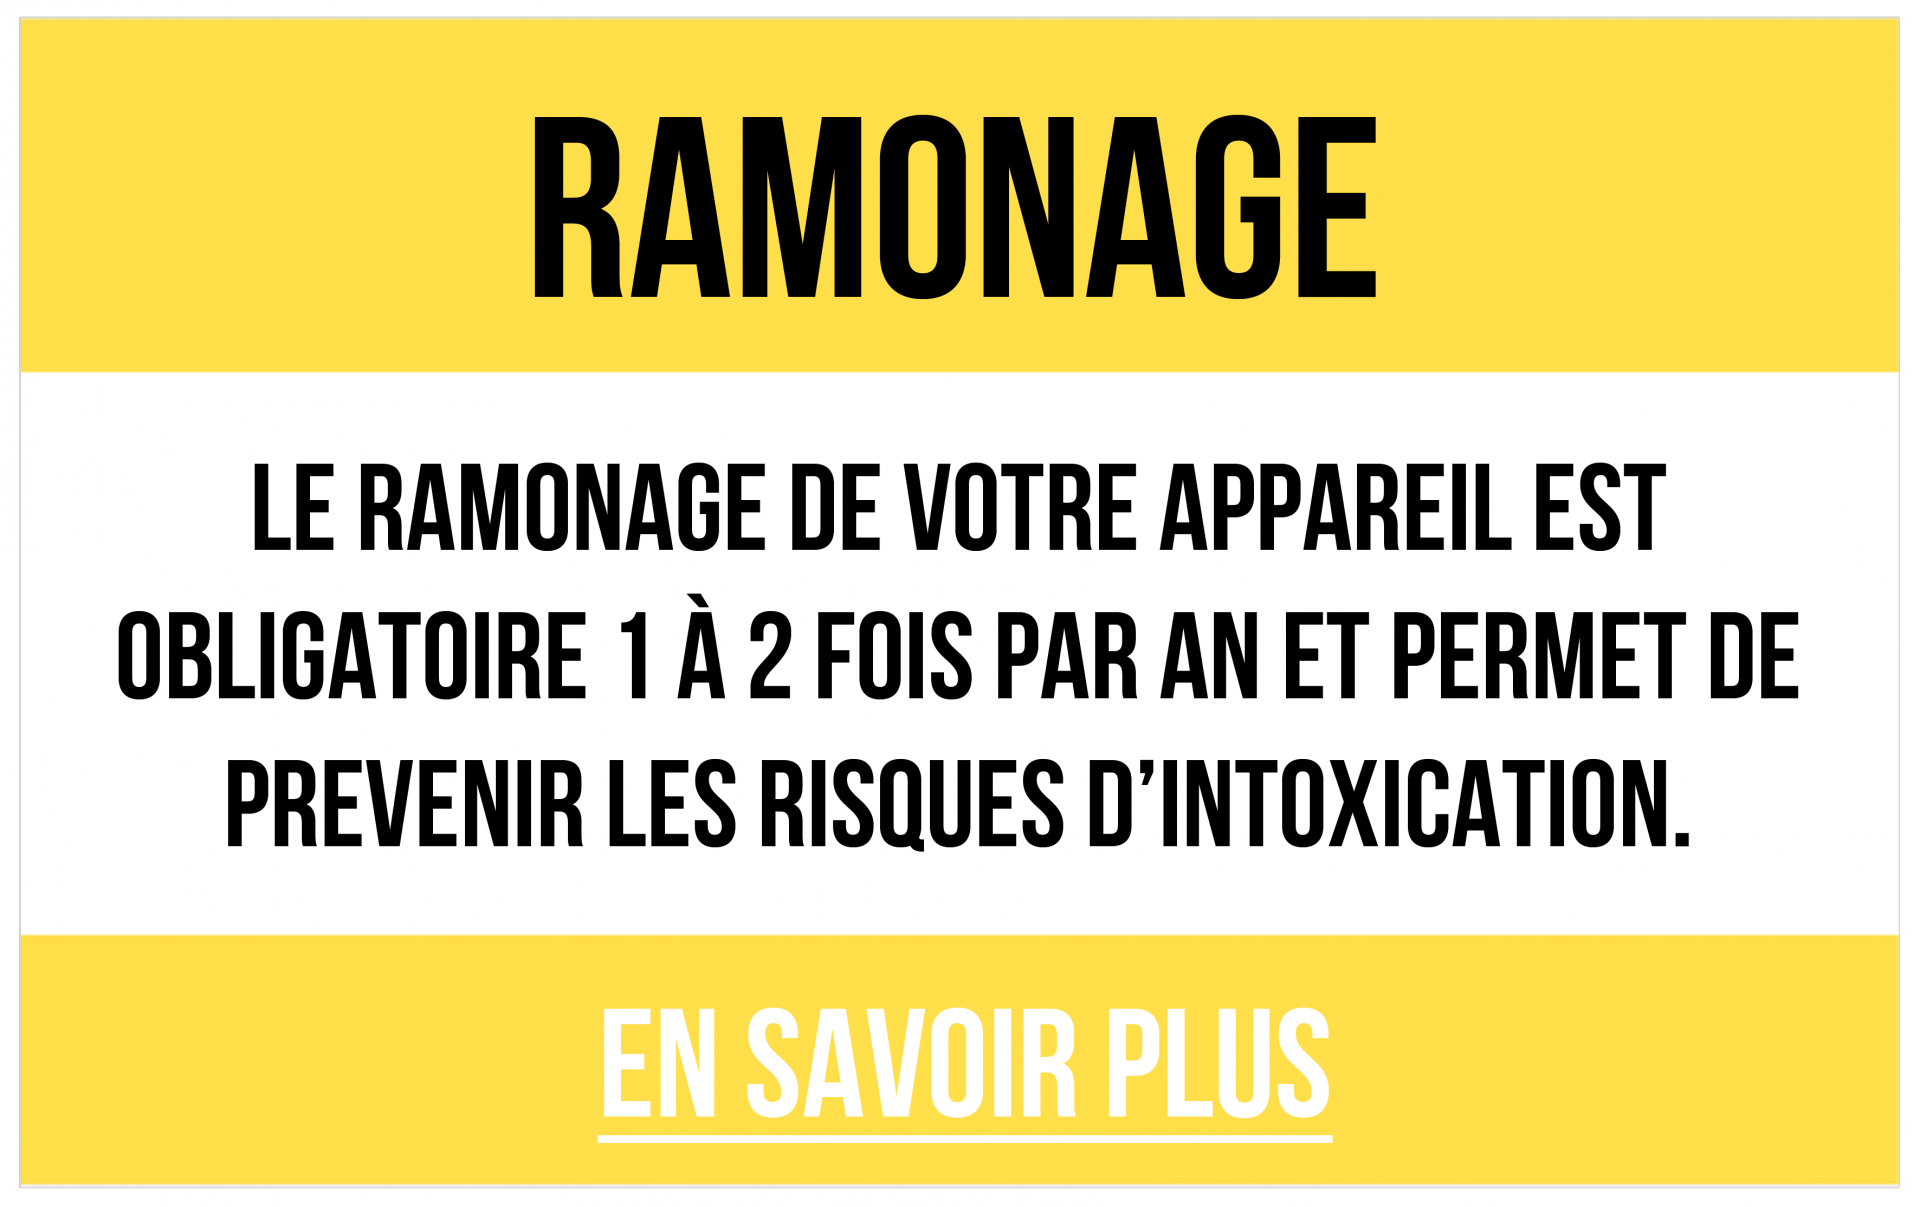 Ramonage